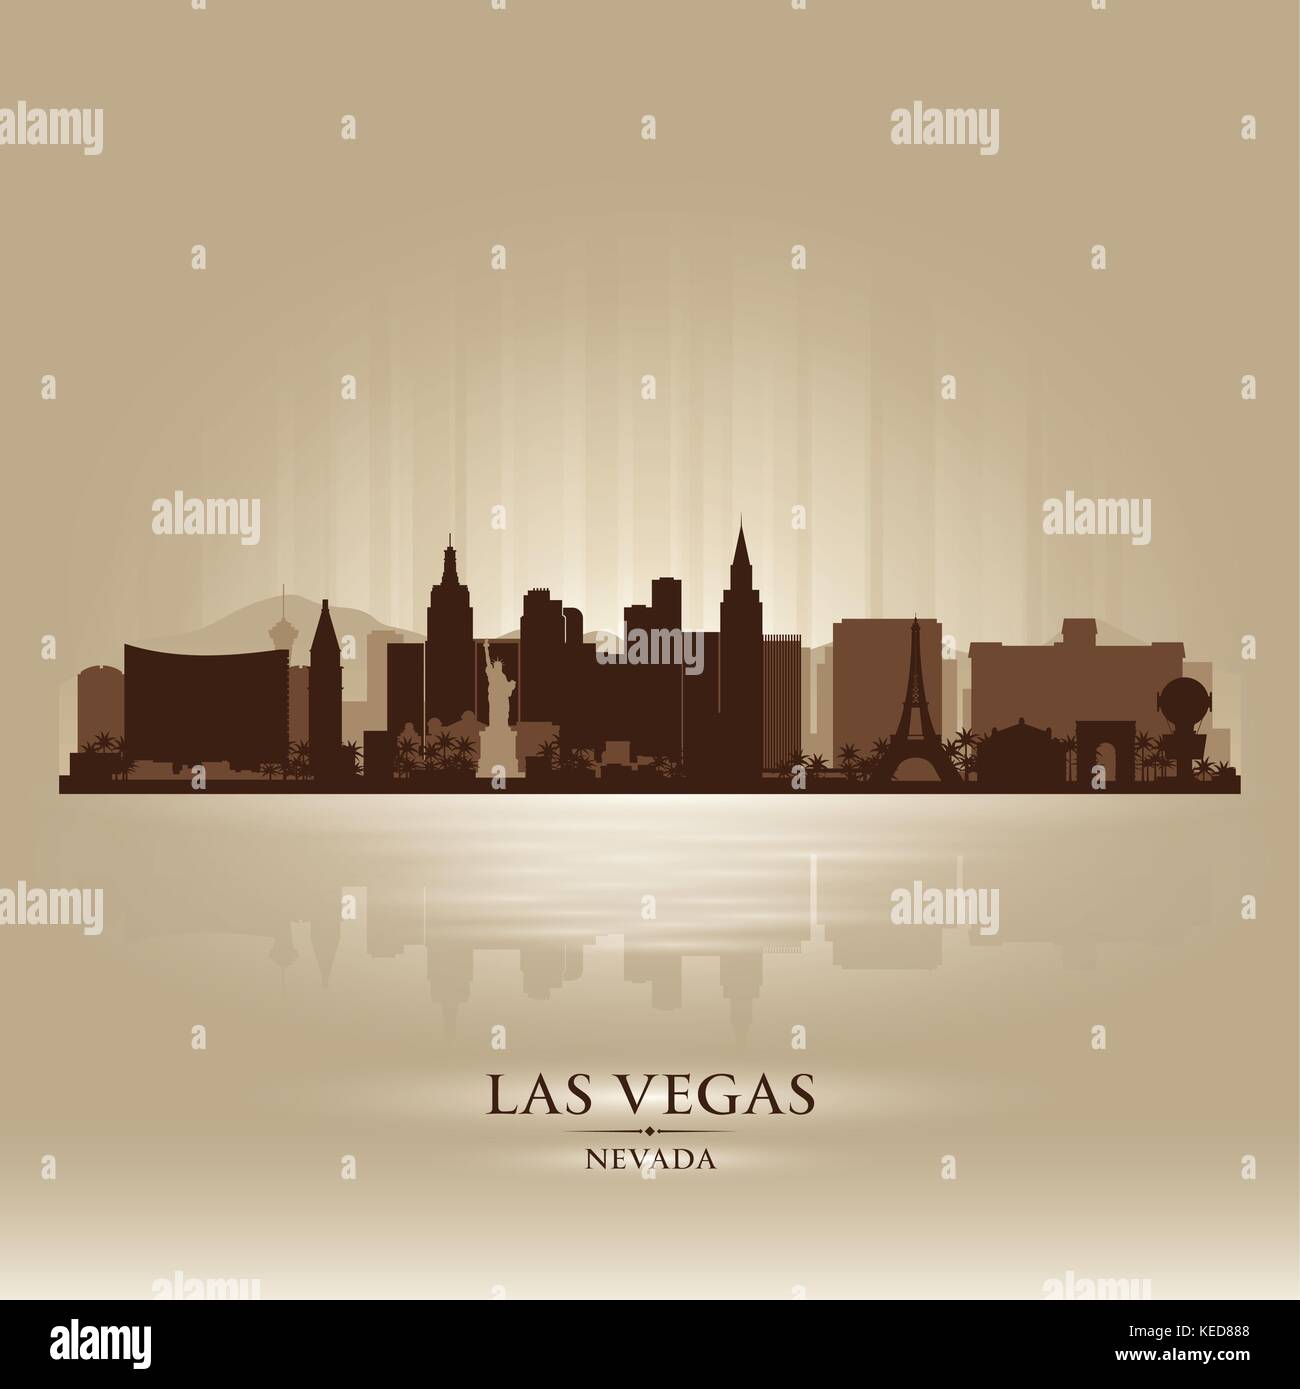 Las Vegas, Nevada skyline city silhouette Stock Vector